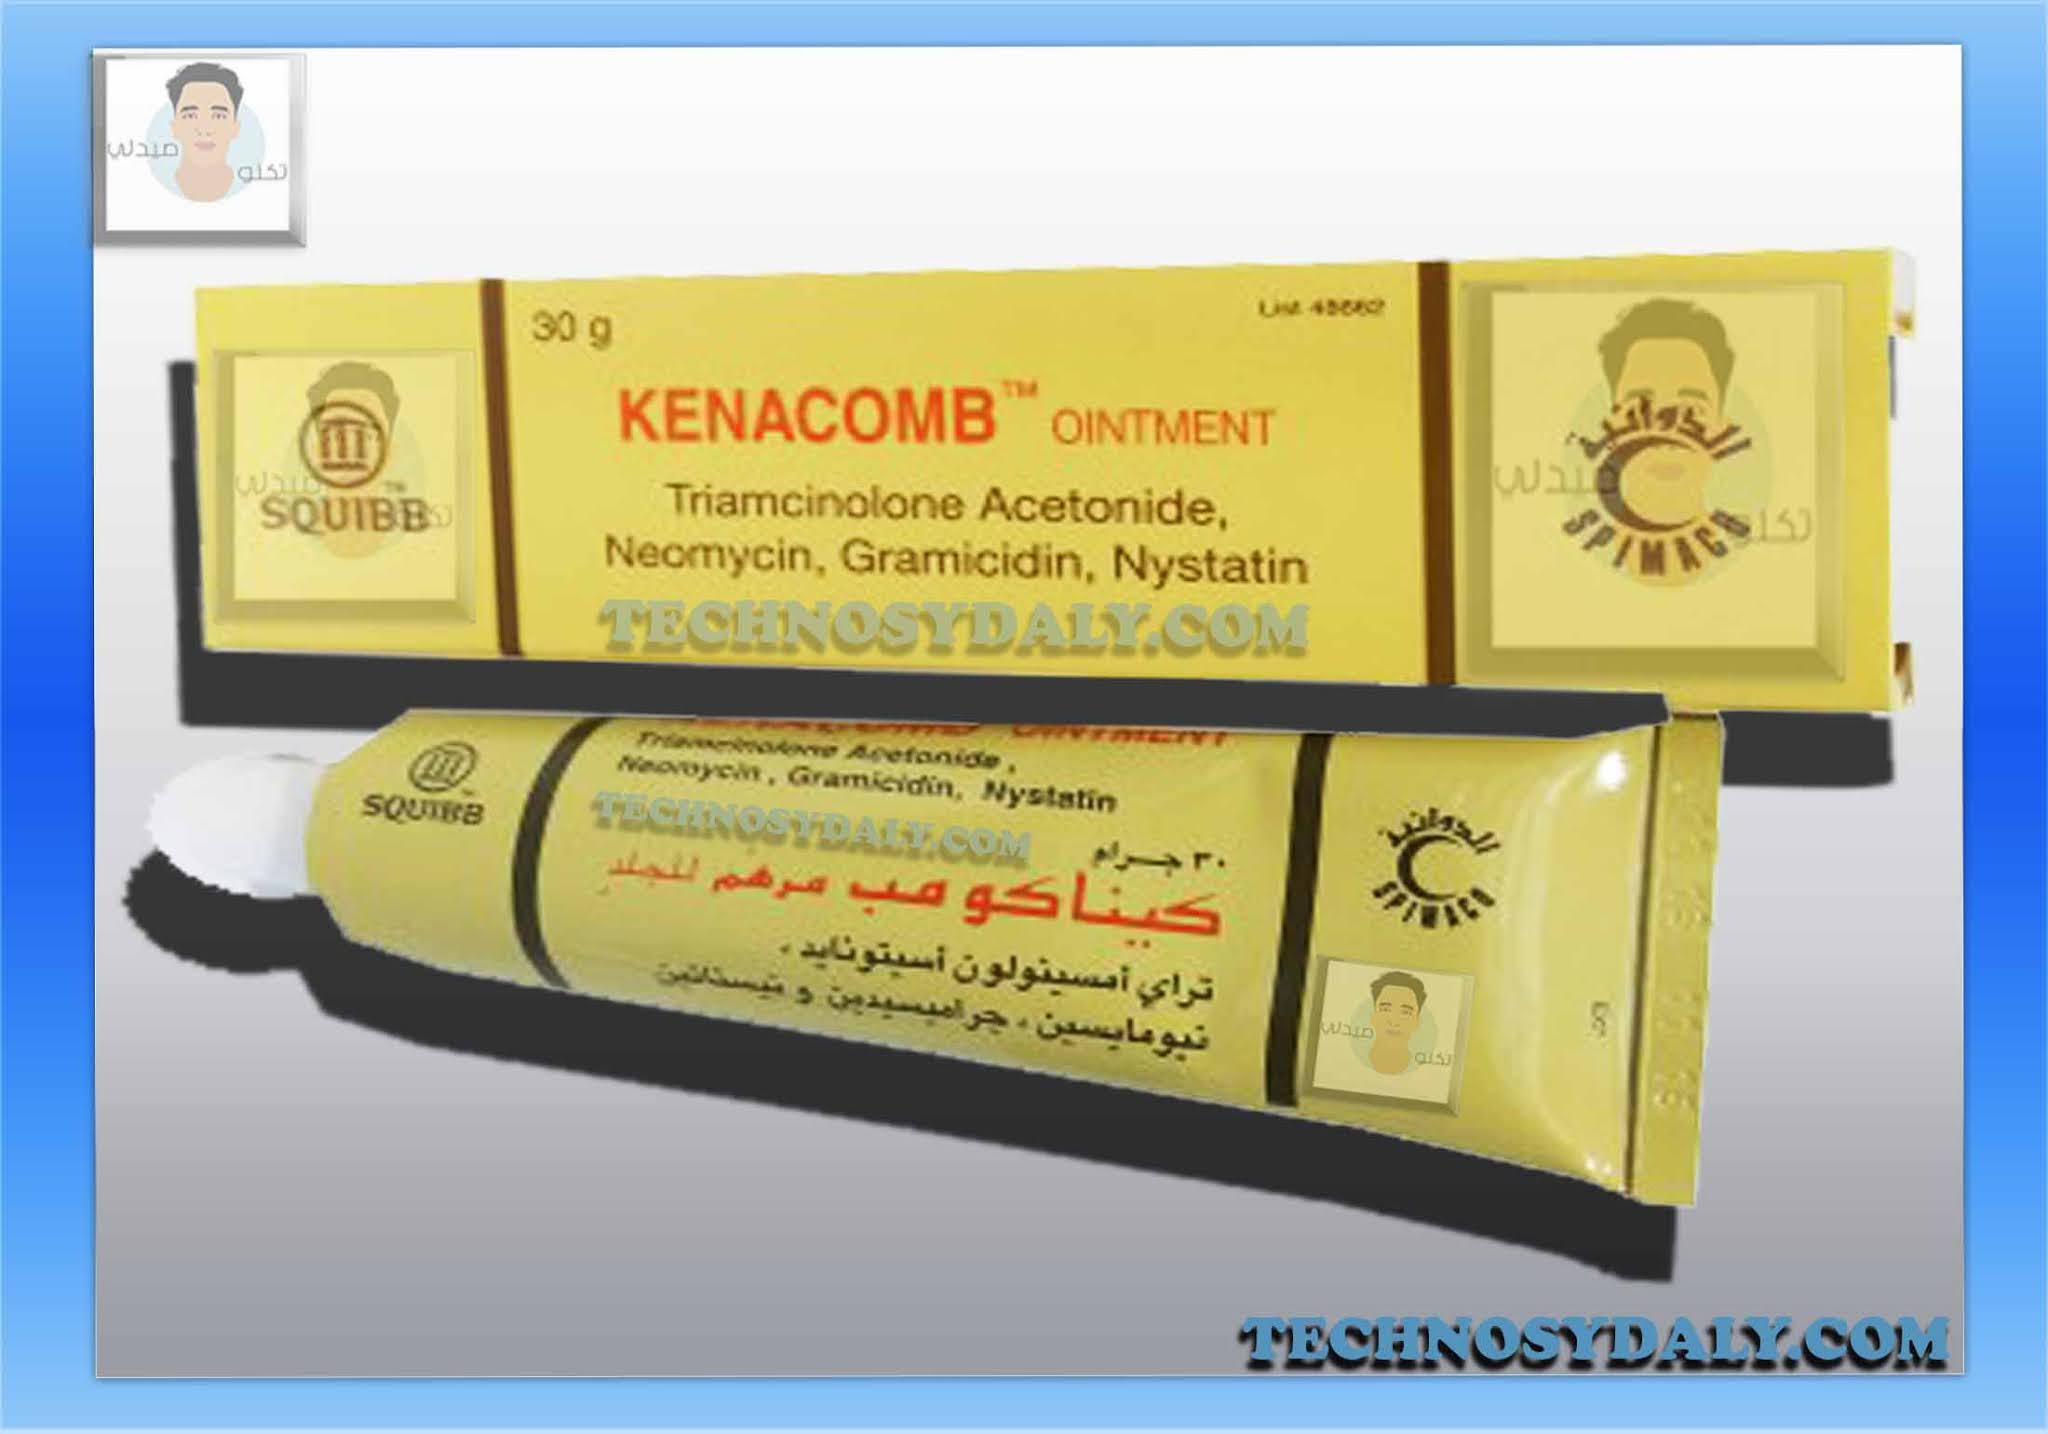 كيناكوم kenacomb-cream-oint كريم و مرهم لتخفيف التهابات الجلد والحكة والاحمرار